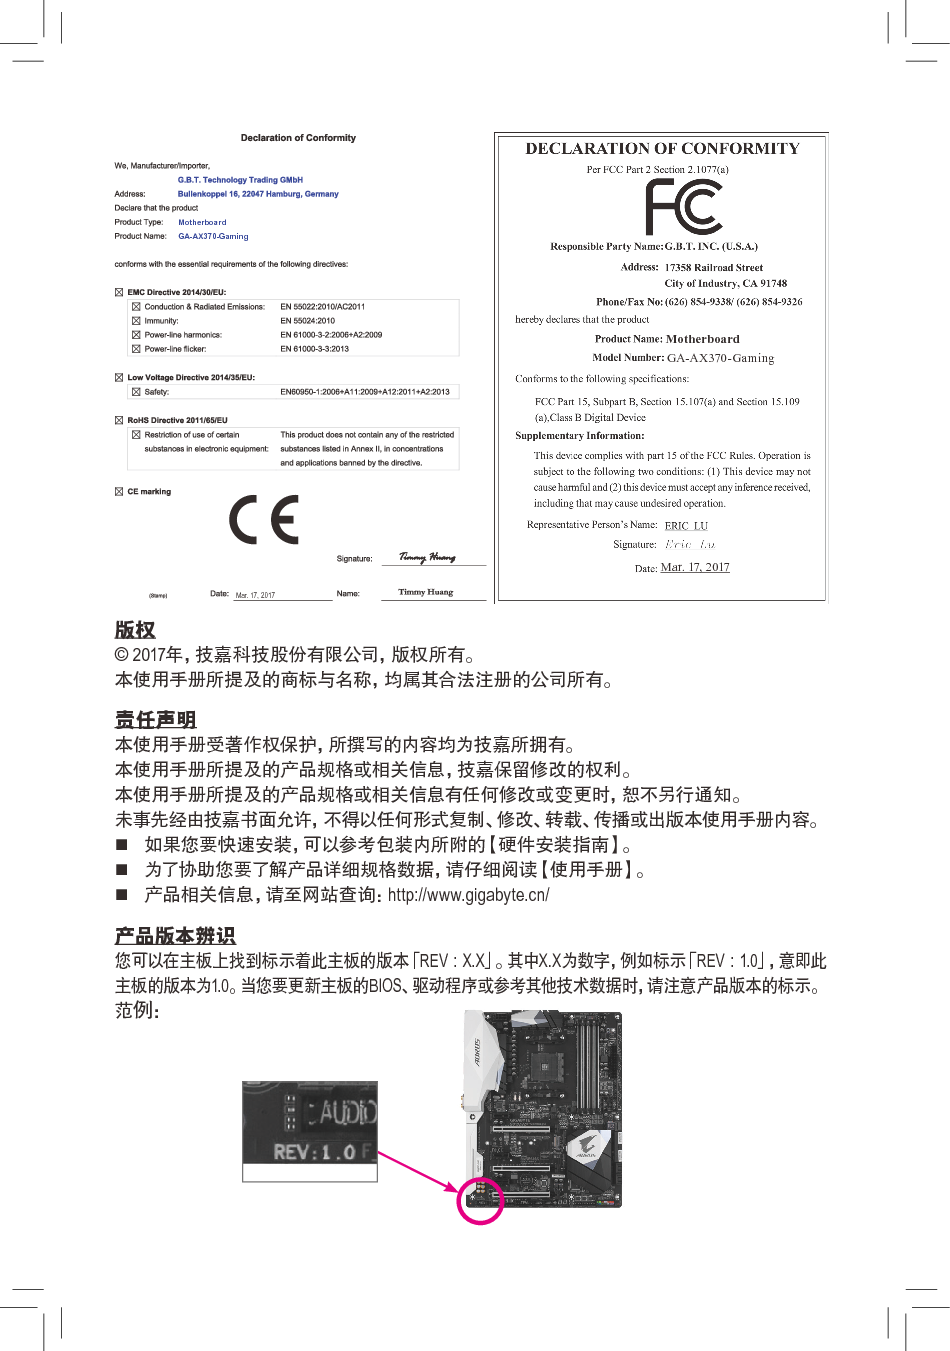 技嘉 Gigabyte GA-AX370-Gaming 使用手册 第1页